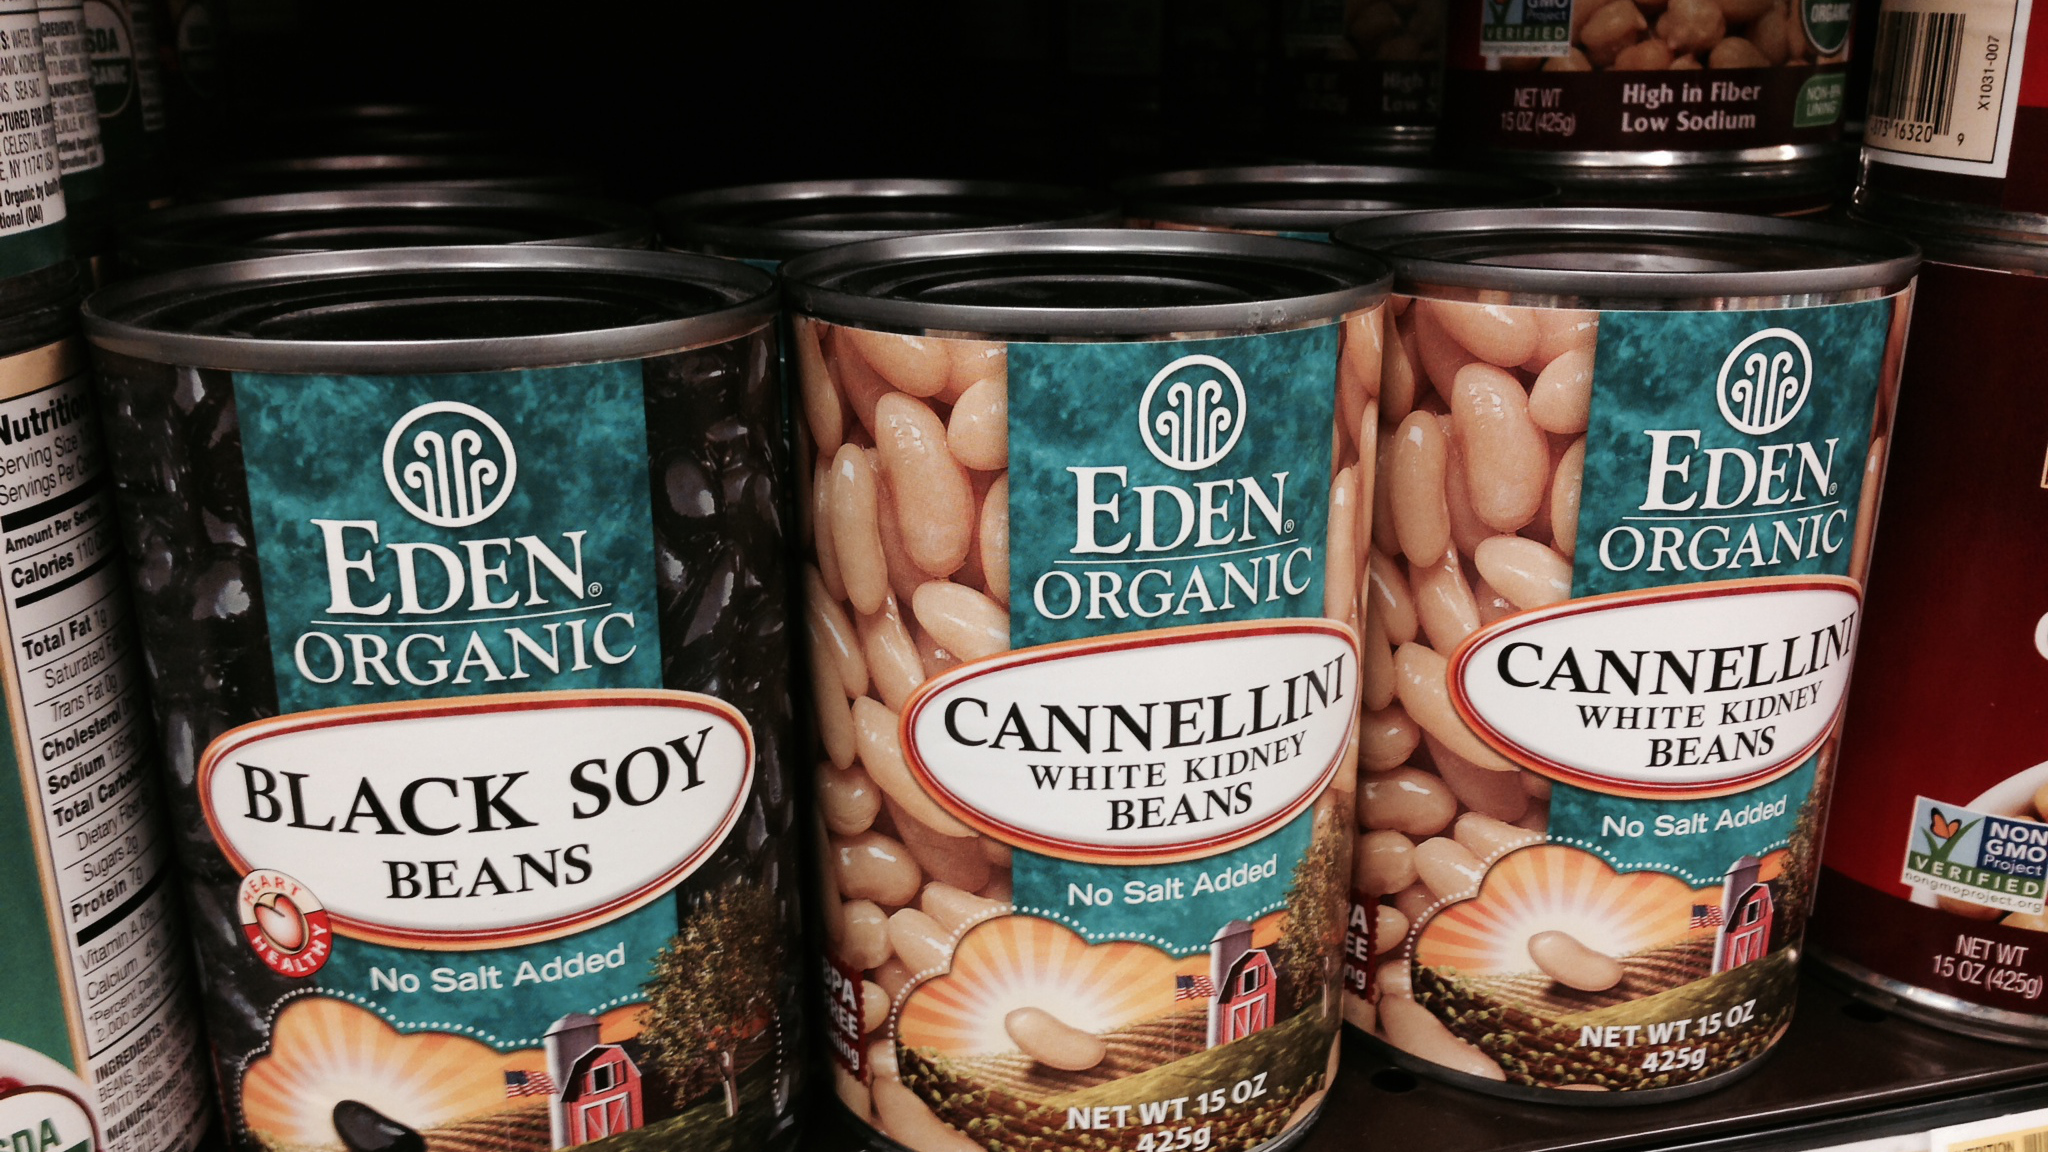 Eden Food cans